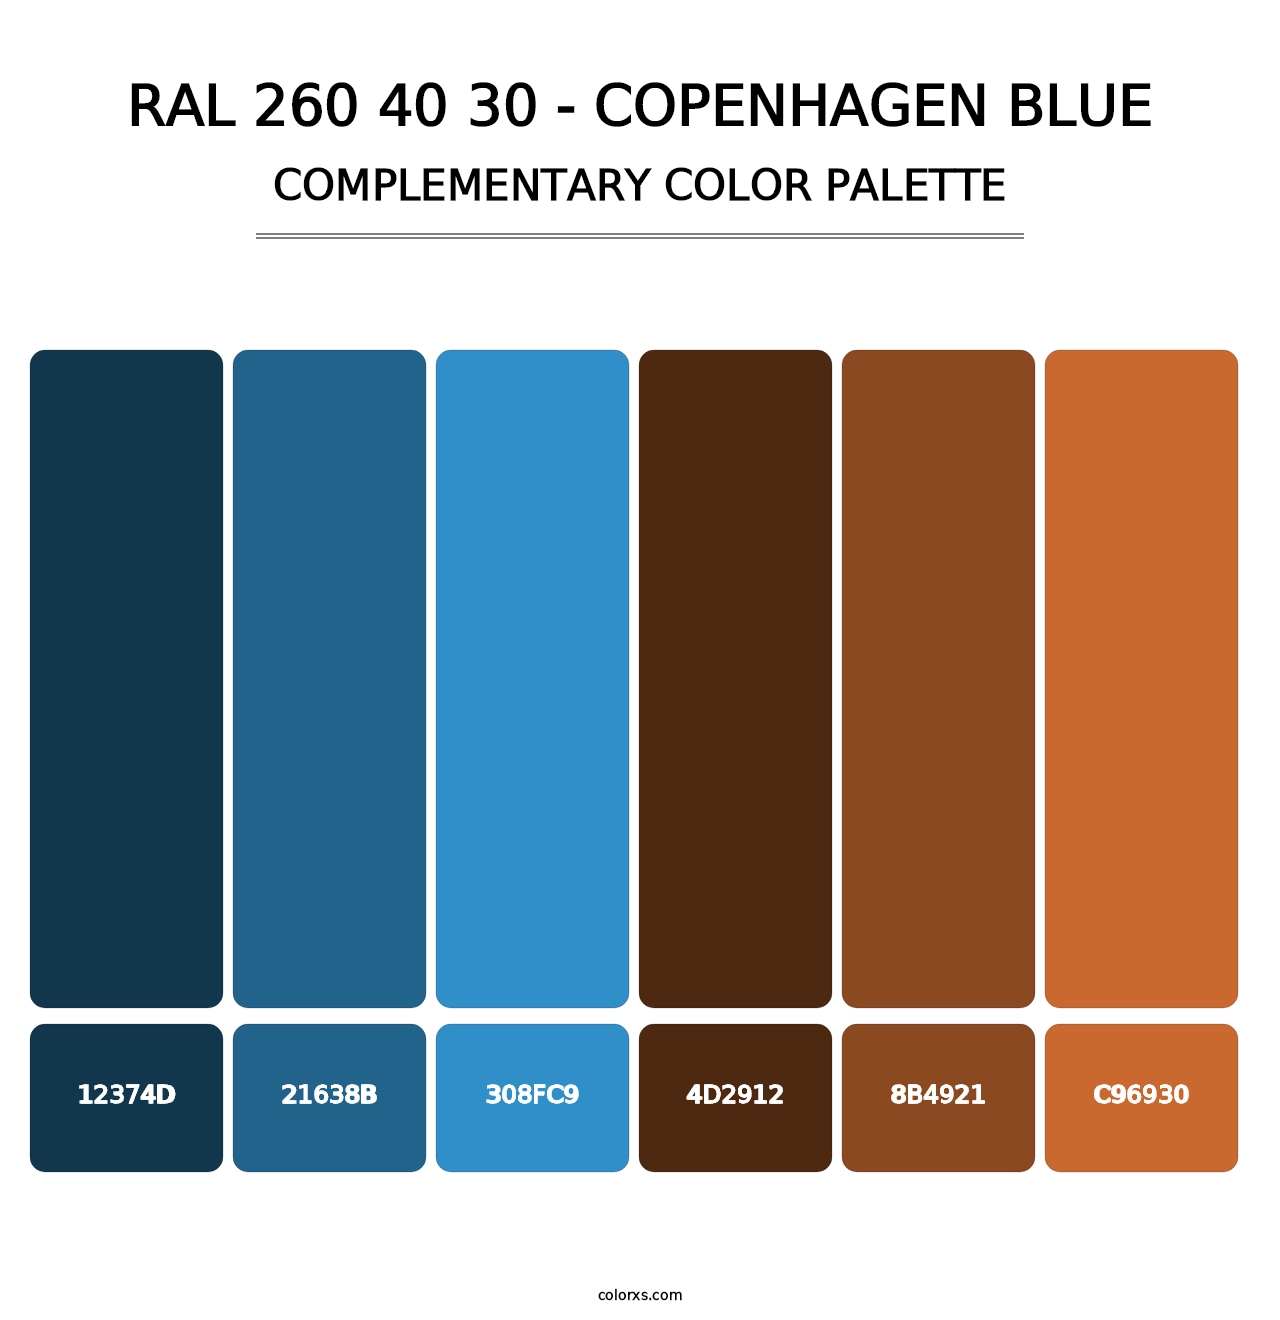 RAL 260 40 30 - Copenhagen Blue - Complementary Color Palette